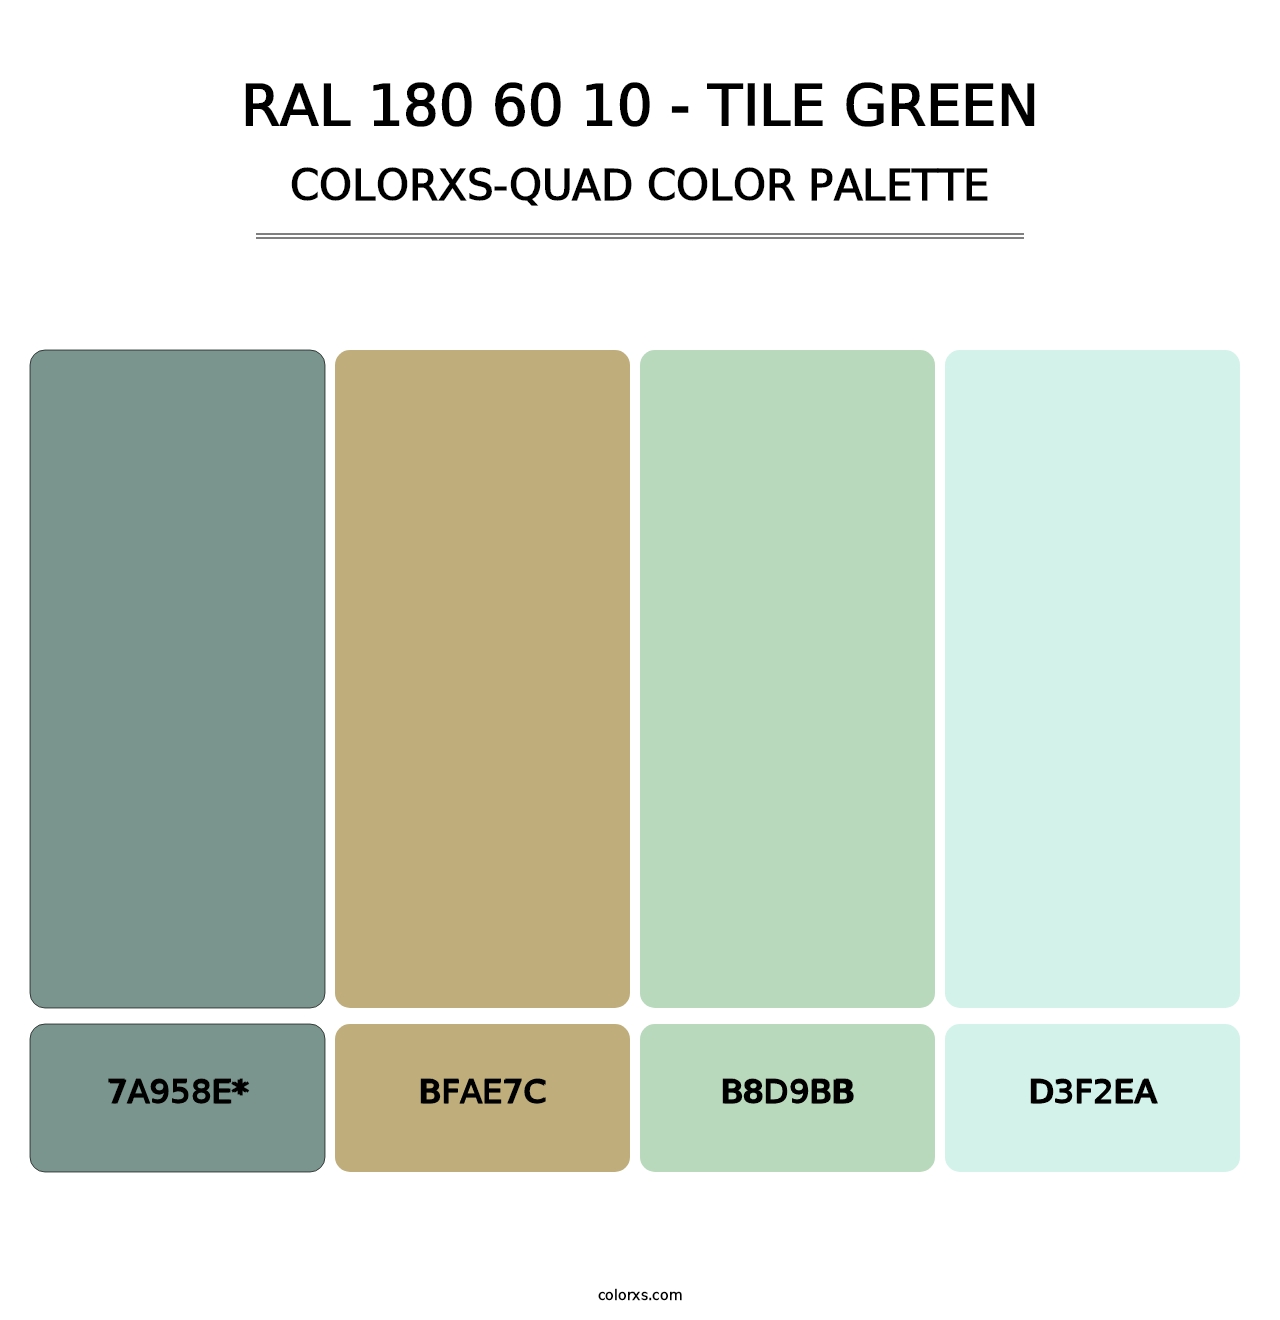 RAL 180 60 10 - Tile Green - Colorxs Quad Palette